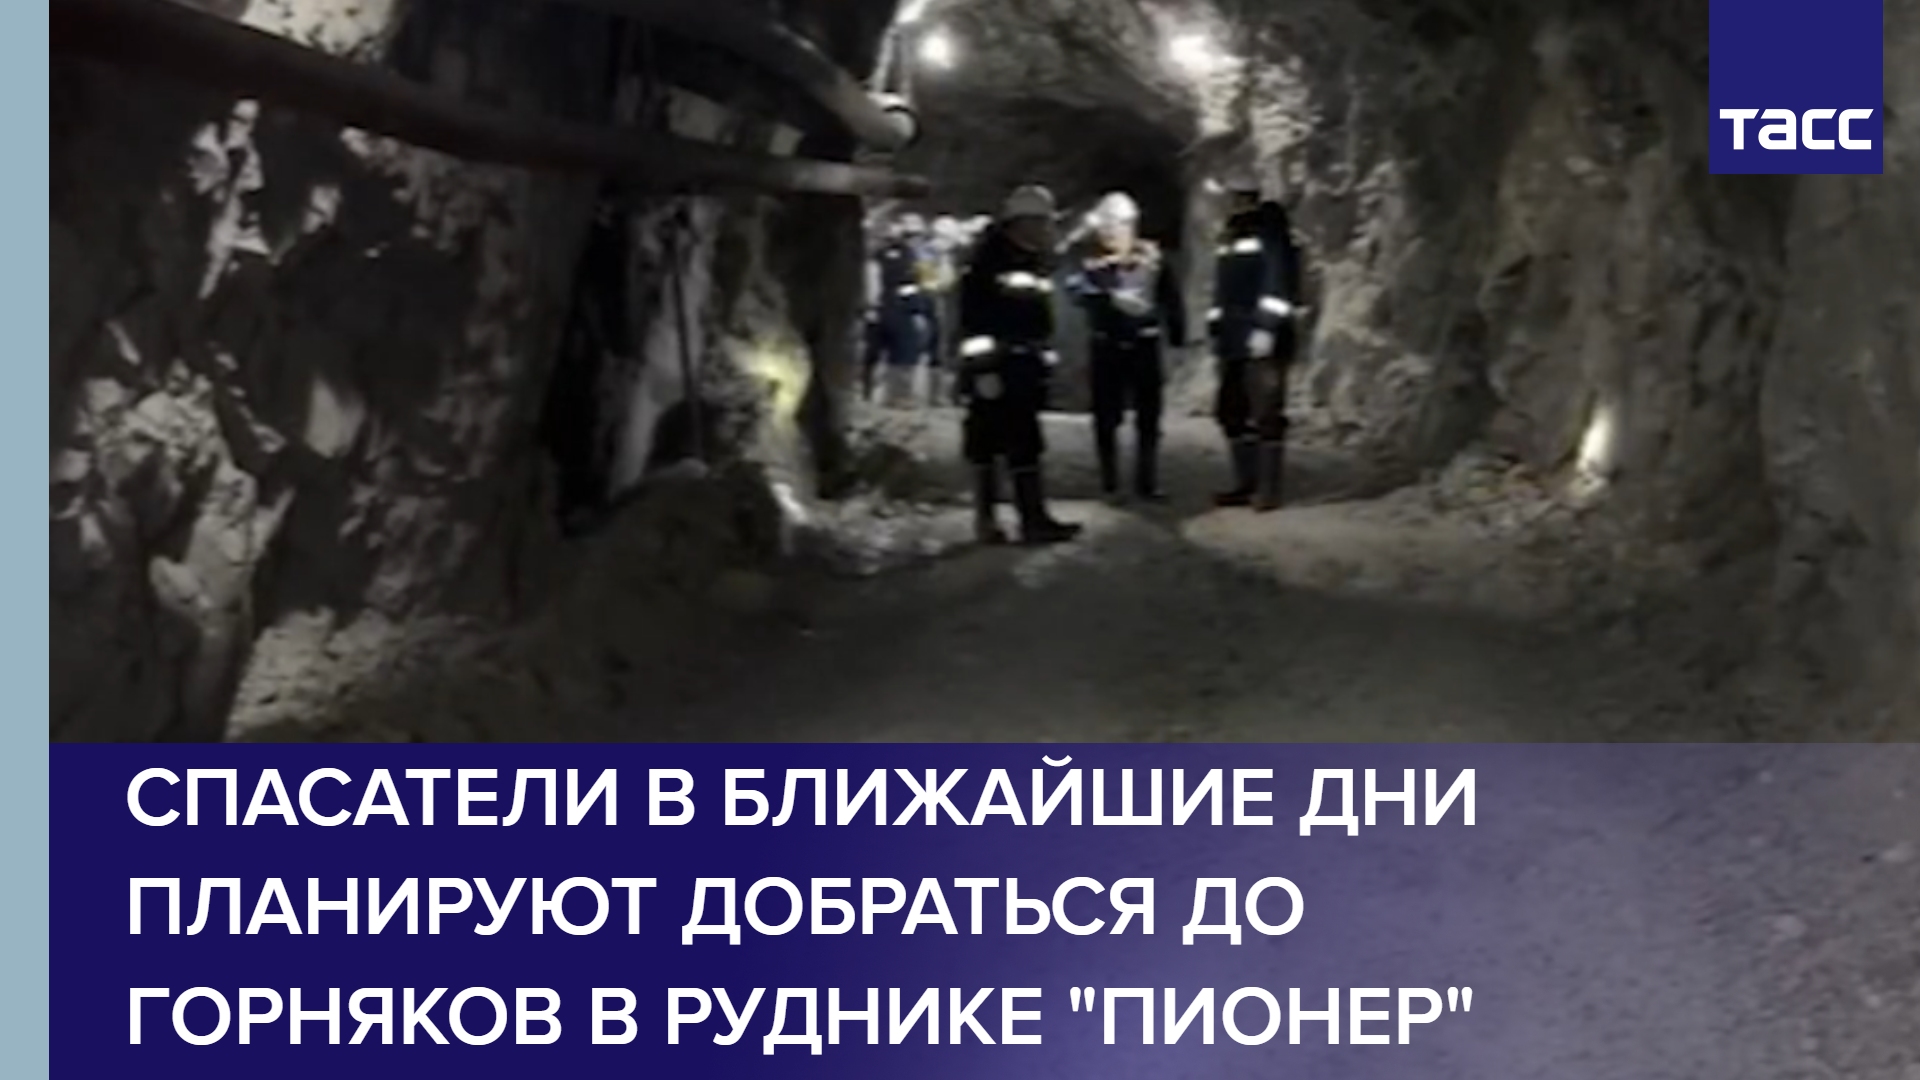 Спасатели в ближайшие дни планируют добраться до горняков в руднике "Пионер"